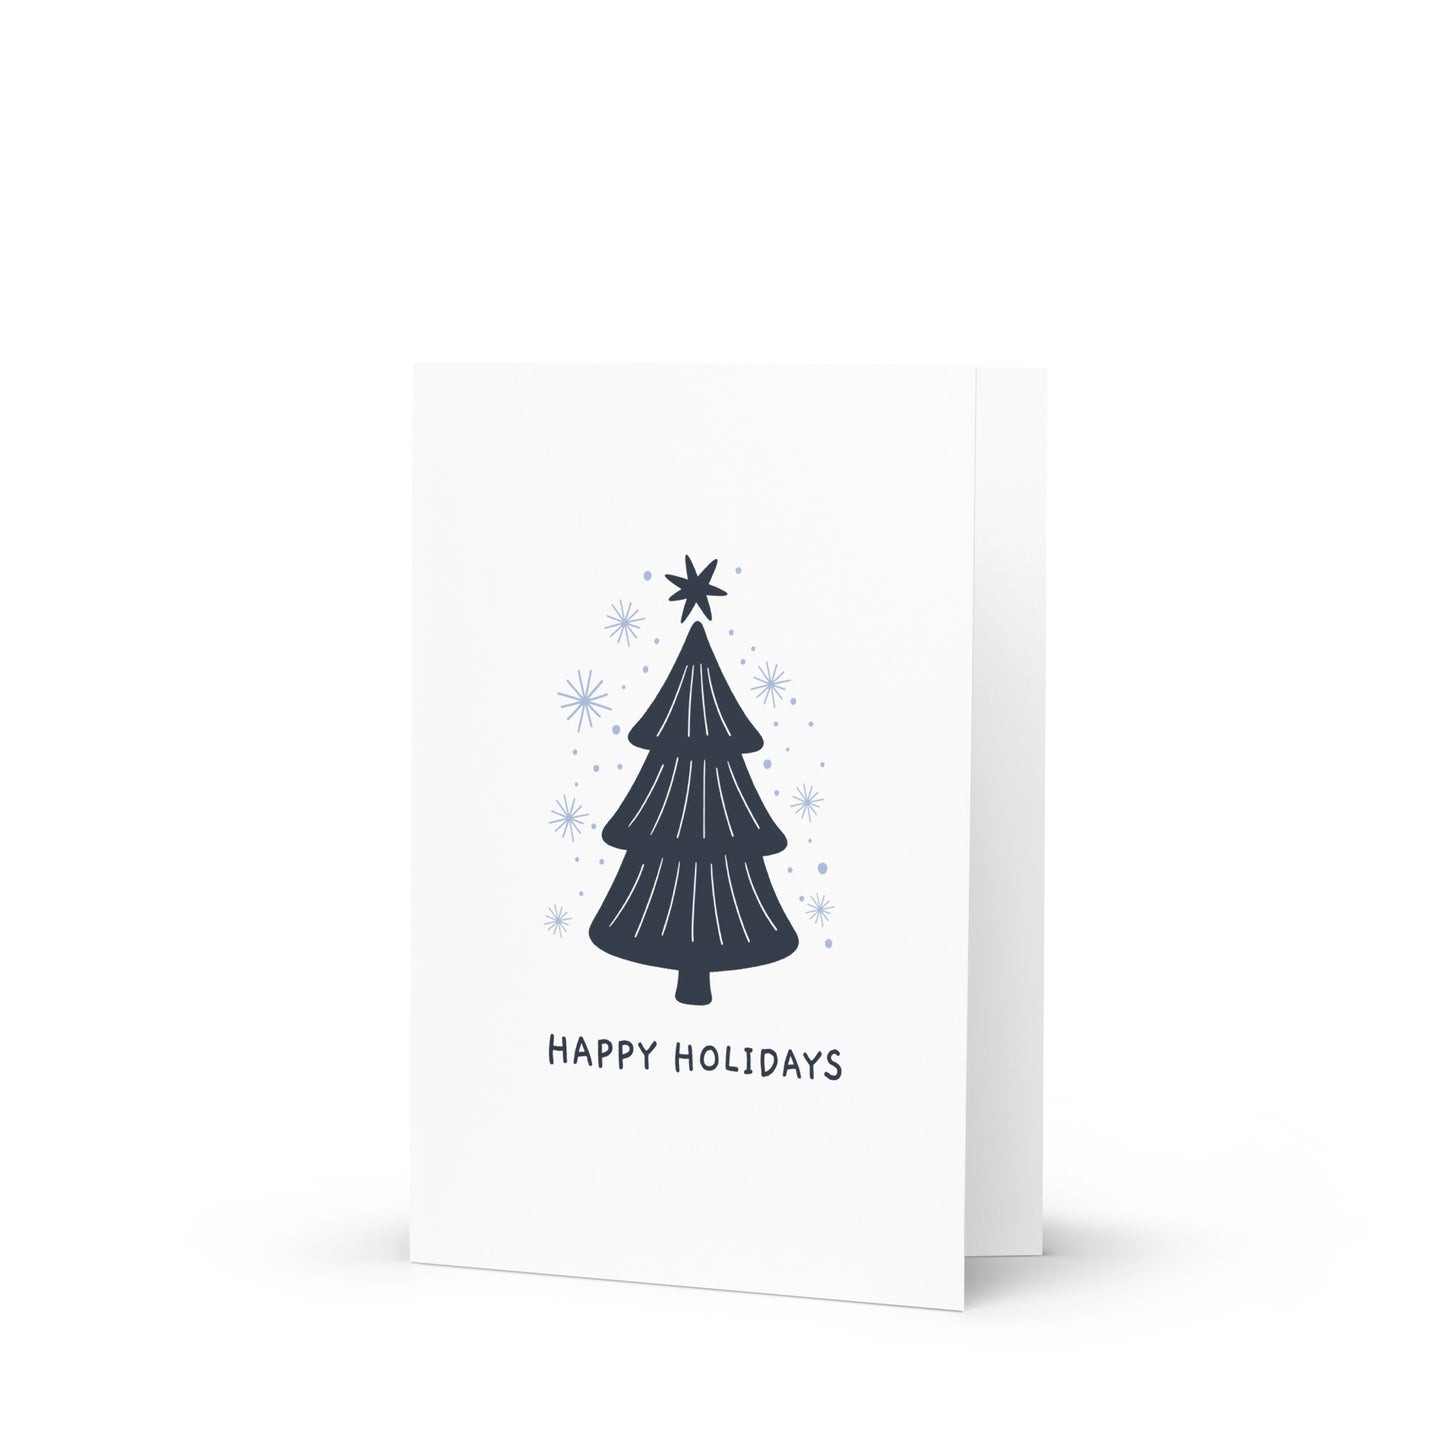 Happy Holidays - Stylish Christmas Card with Elegant Minimalism